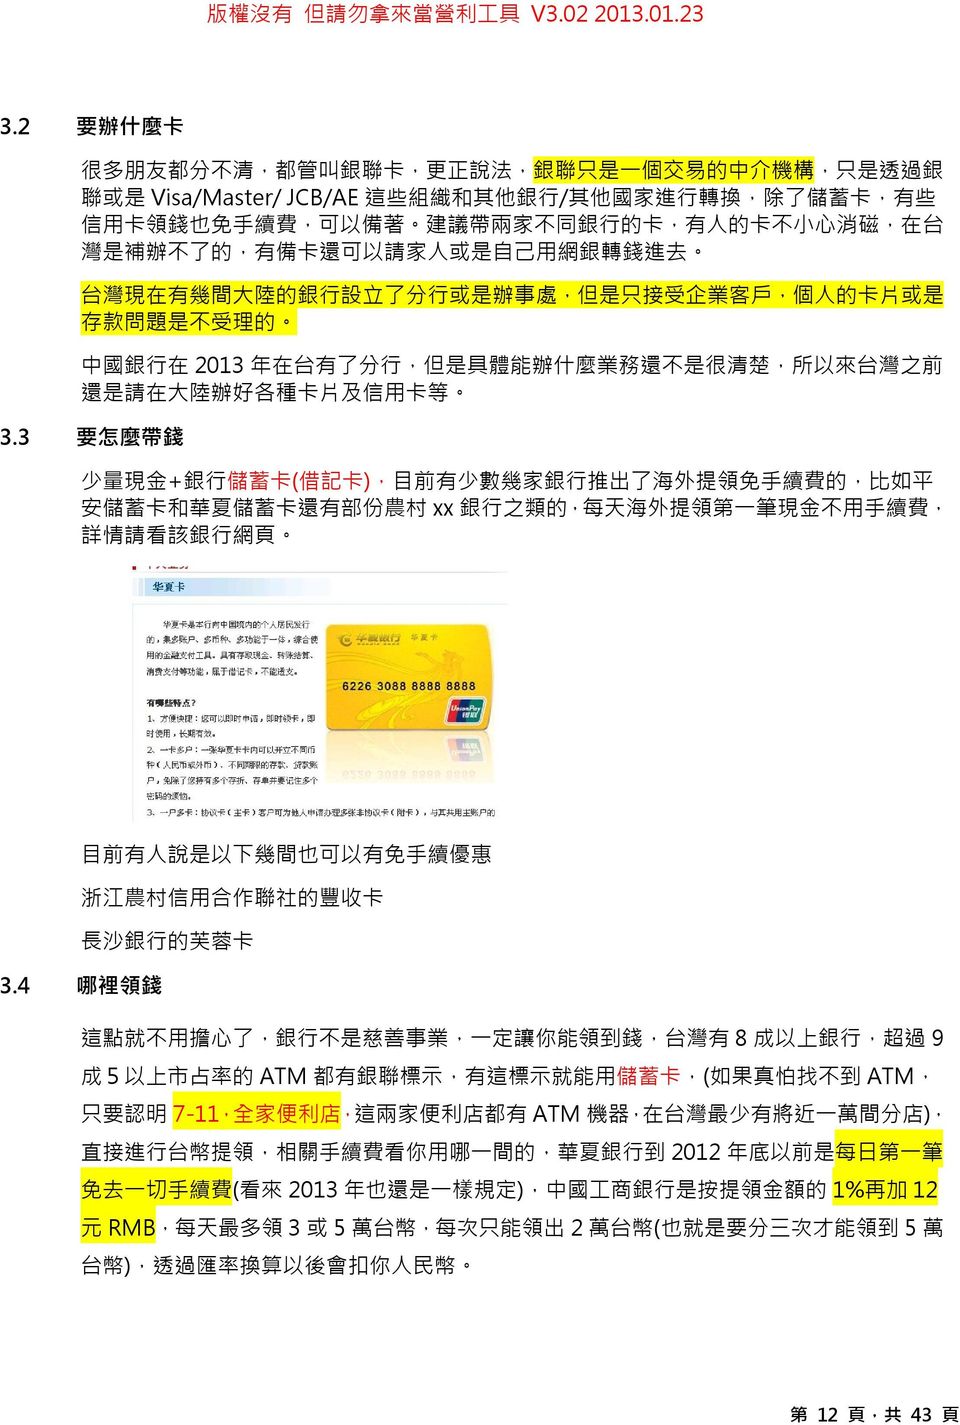 銀 行 在 2013 年 在 台 有 了 分 行, 但 是 具 體 能 辦 什 麼 業 務 還 不 是 很 清 楚, 所 以 來 台 灣 之 前 還 是 請 在 大 陸 辦 好 各 種 卡 片 及 信 用 卡 等 3.